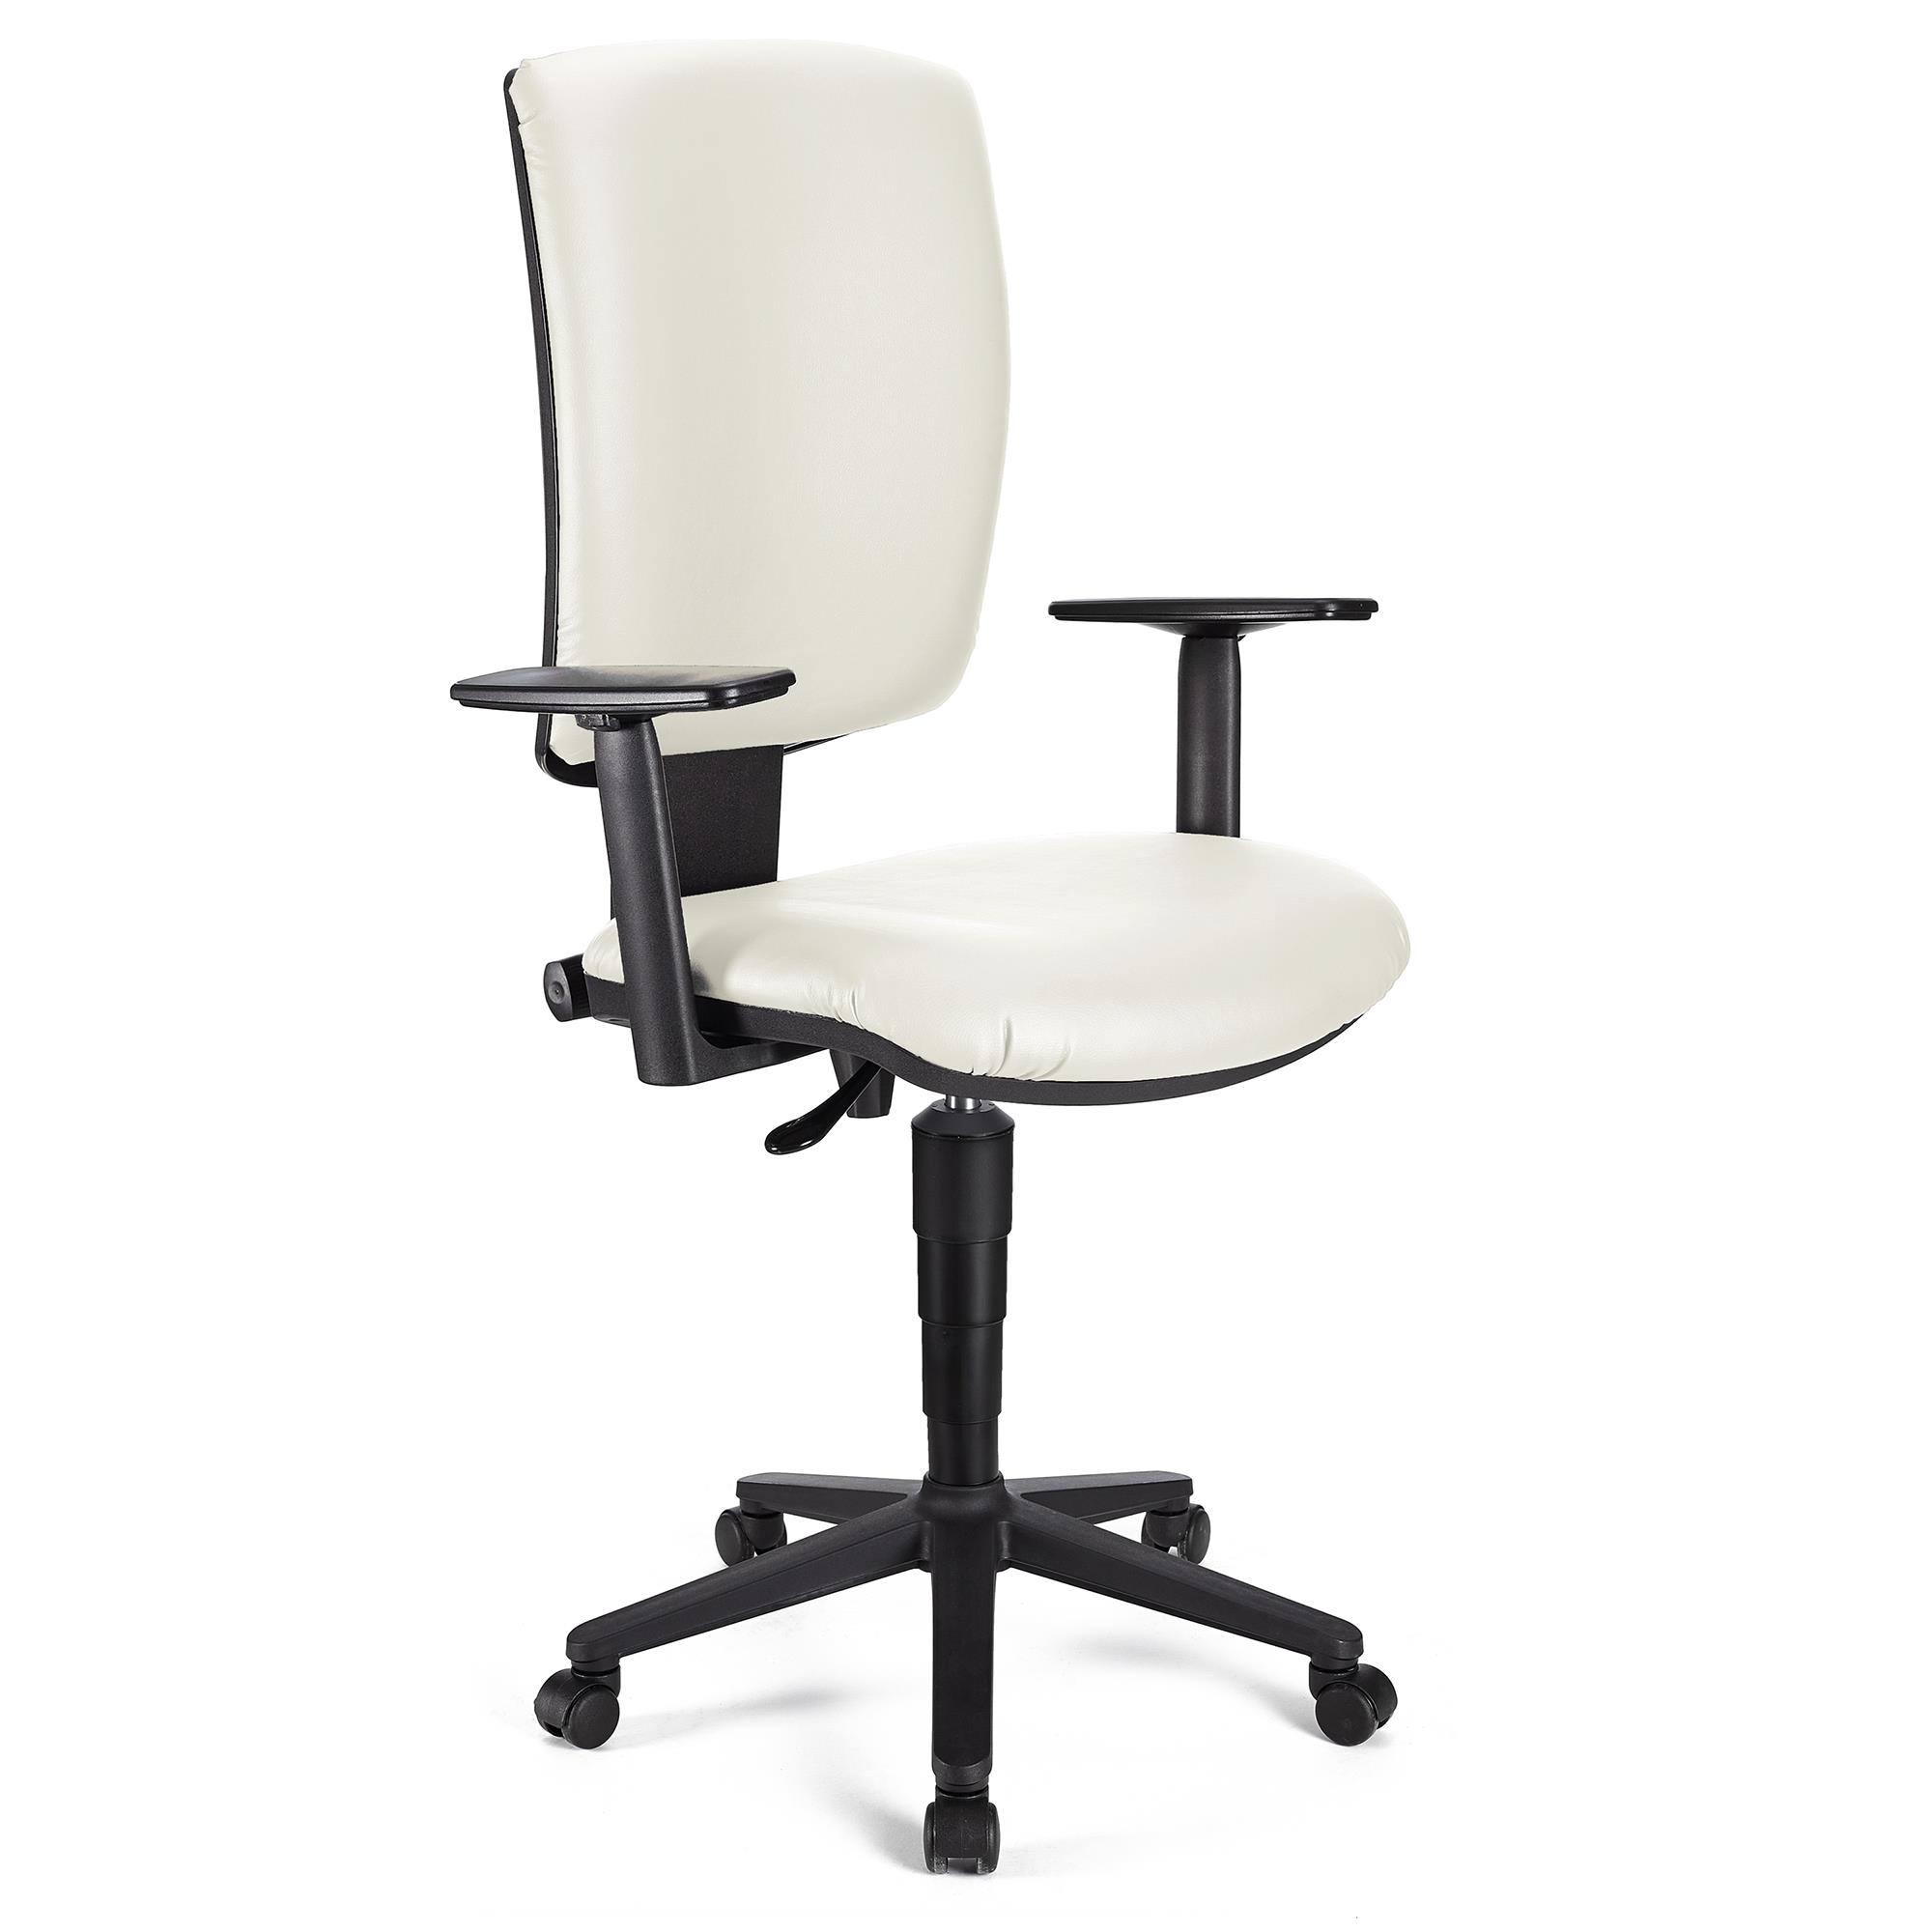 Bürostuhl ATLAS PLUS LEDER, verstellbare Rücken- und Armlehnen, dicke Polsterung, Farbe Weiß